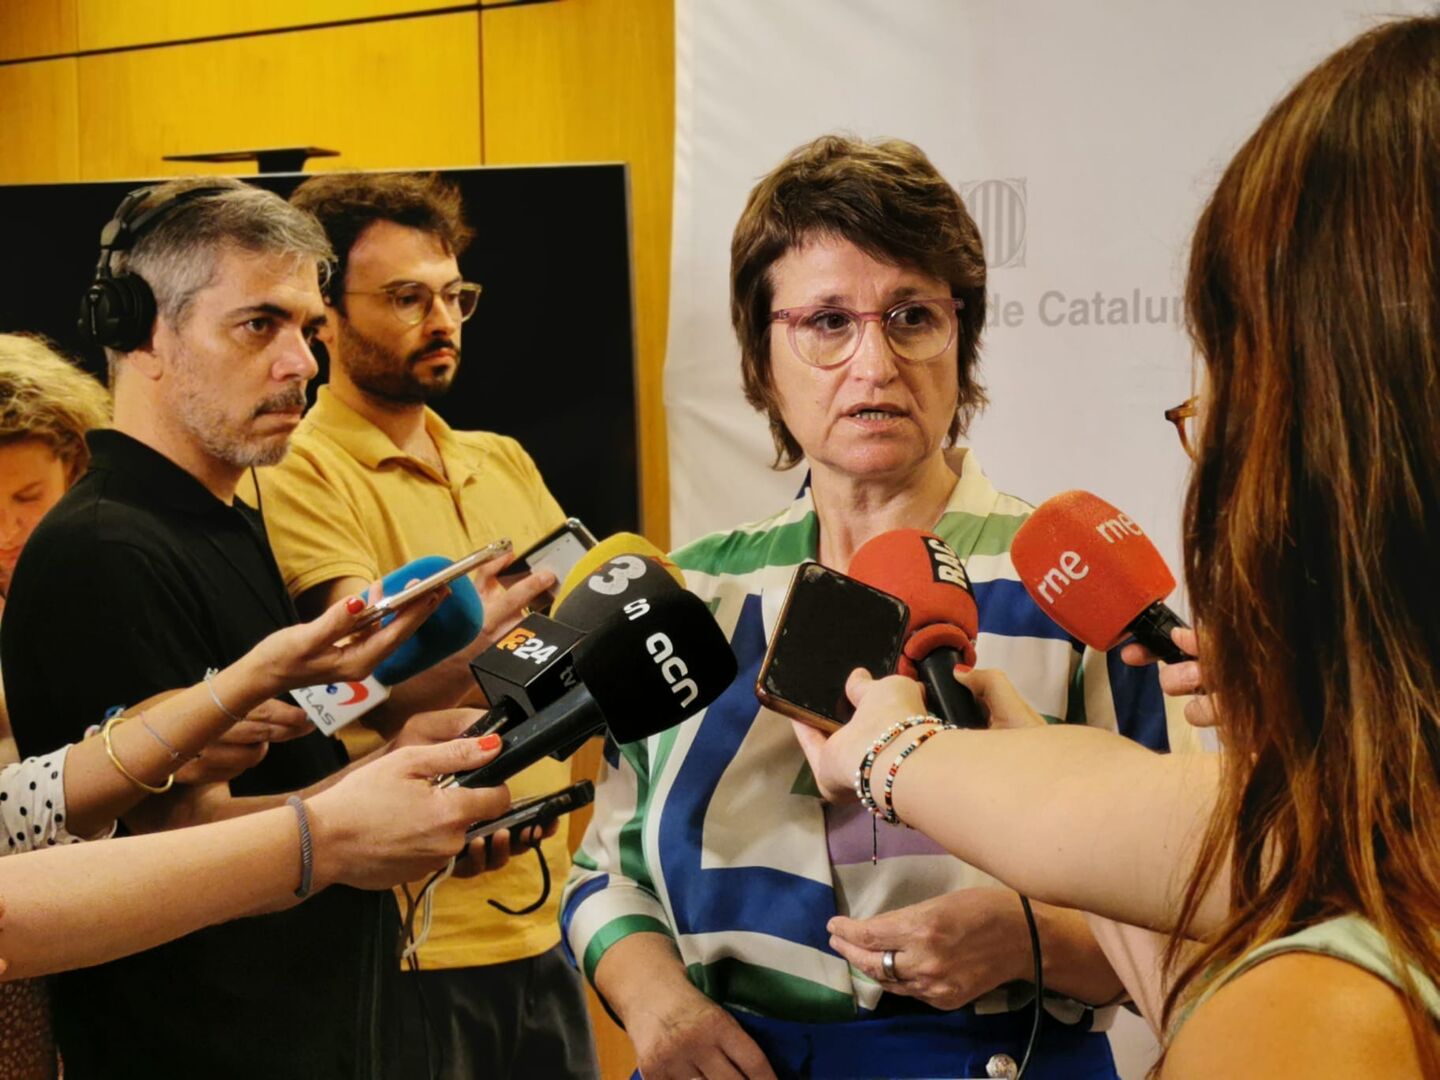 La Generalidad catalana redobla sus esfuerzos para eliminar el español y  acabar con el bilingüismo - Libertad Digital